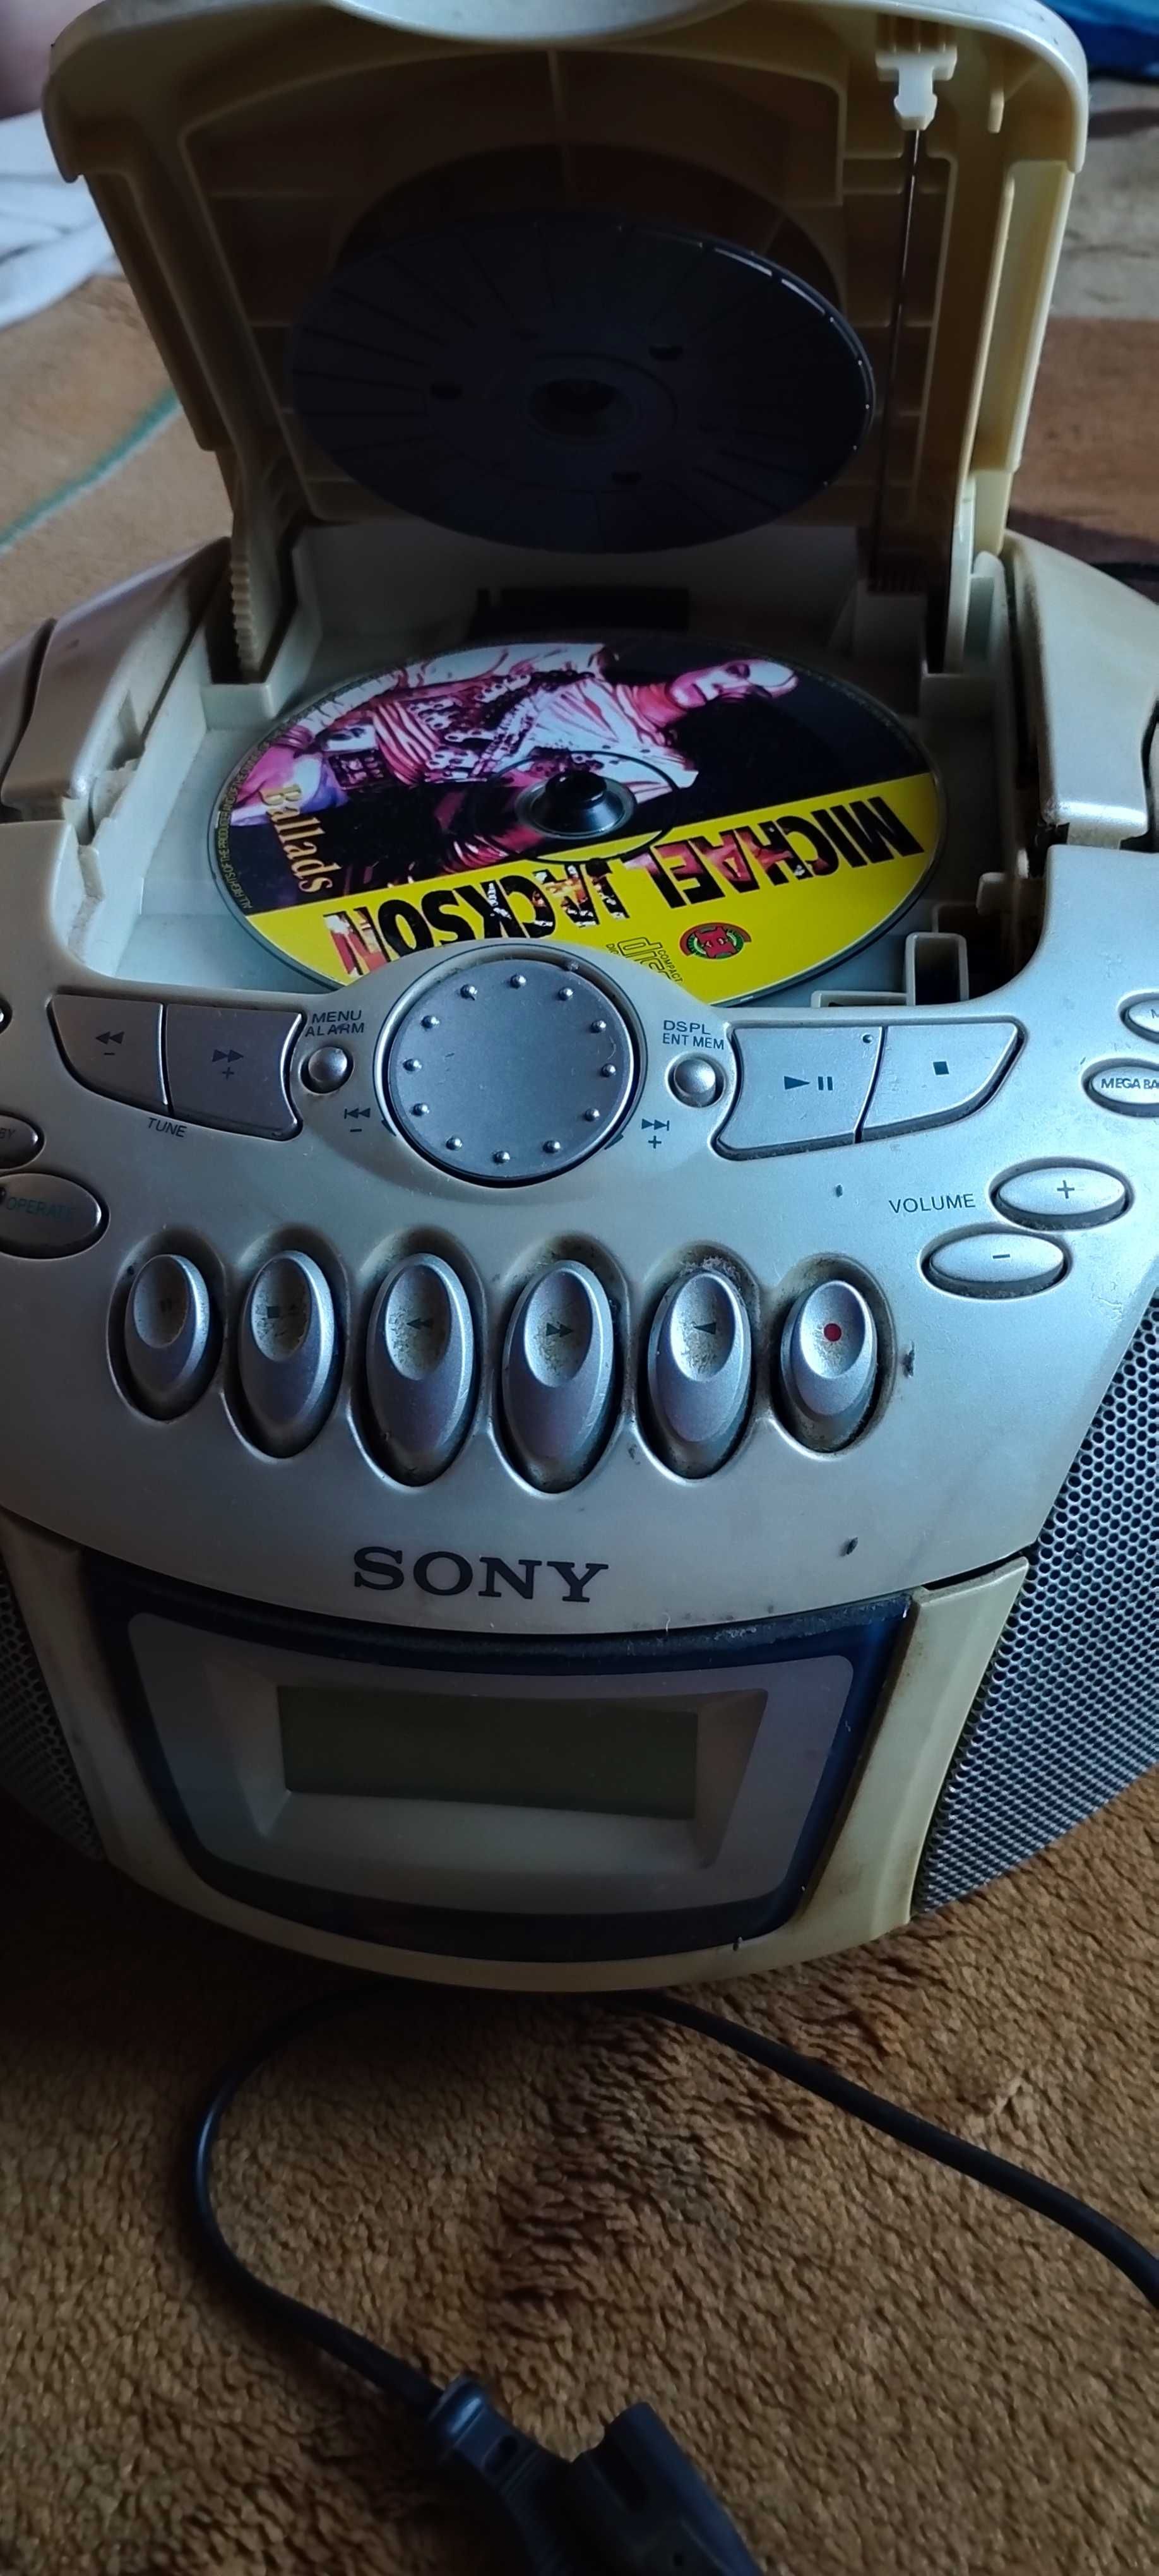 Бумбокс Sony (проигрыватель сд дисков, кассет и радио) Звук супер